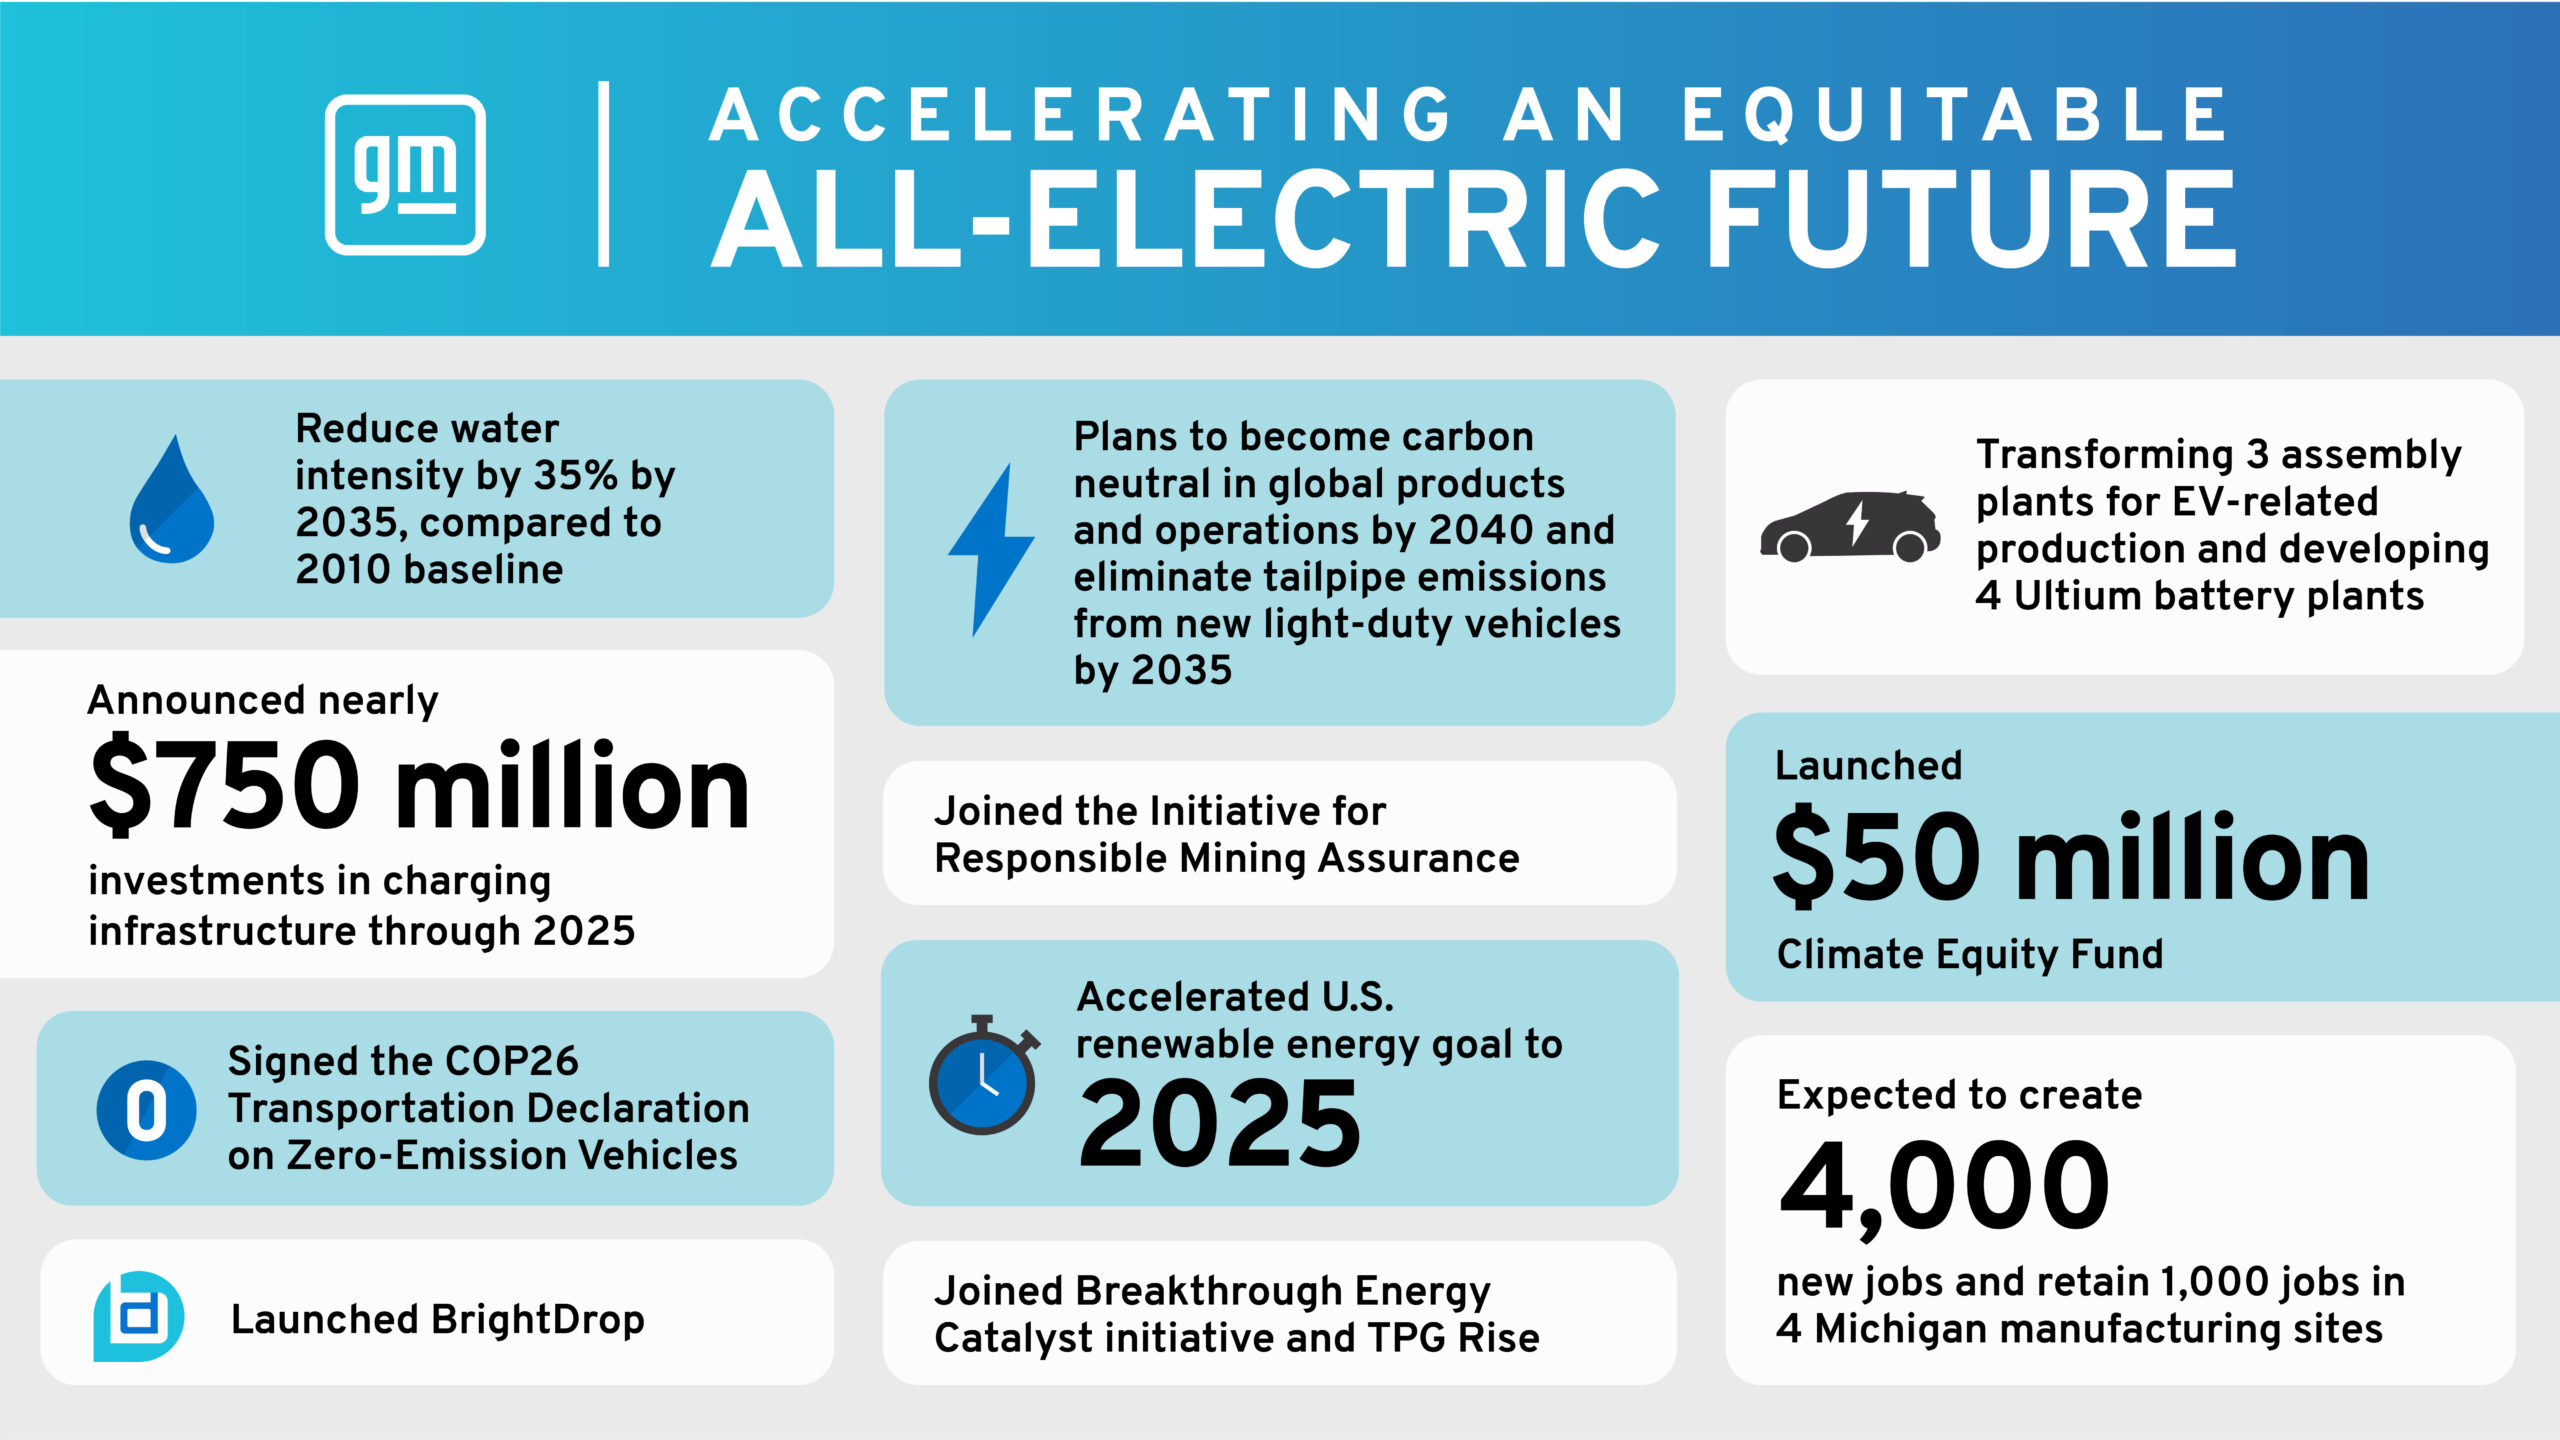 Os avanços da GM em mobilidade elétrica